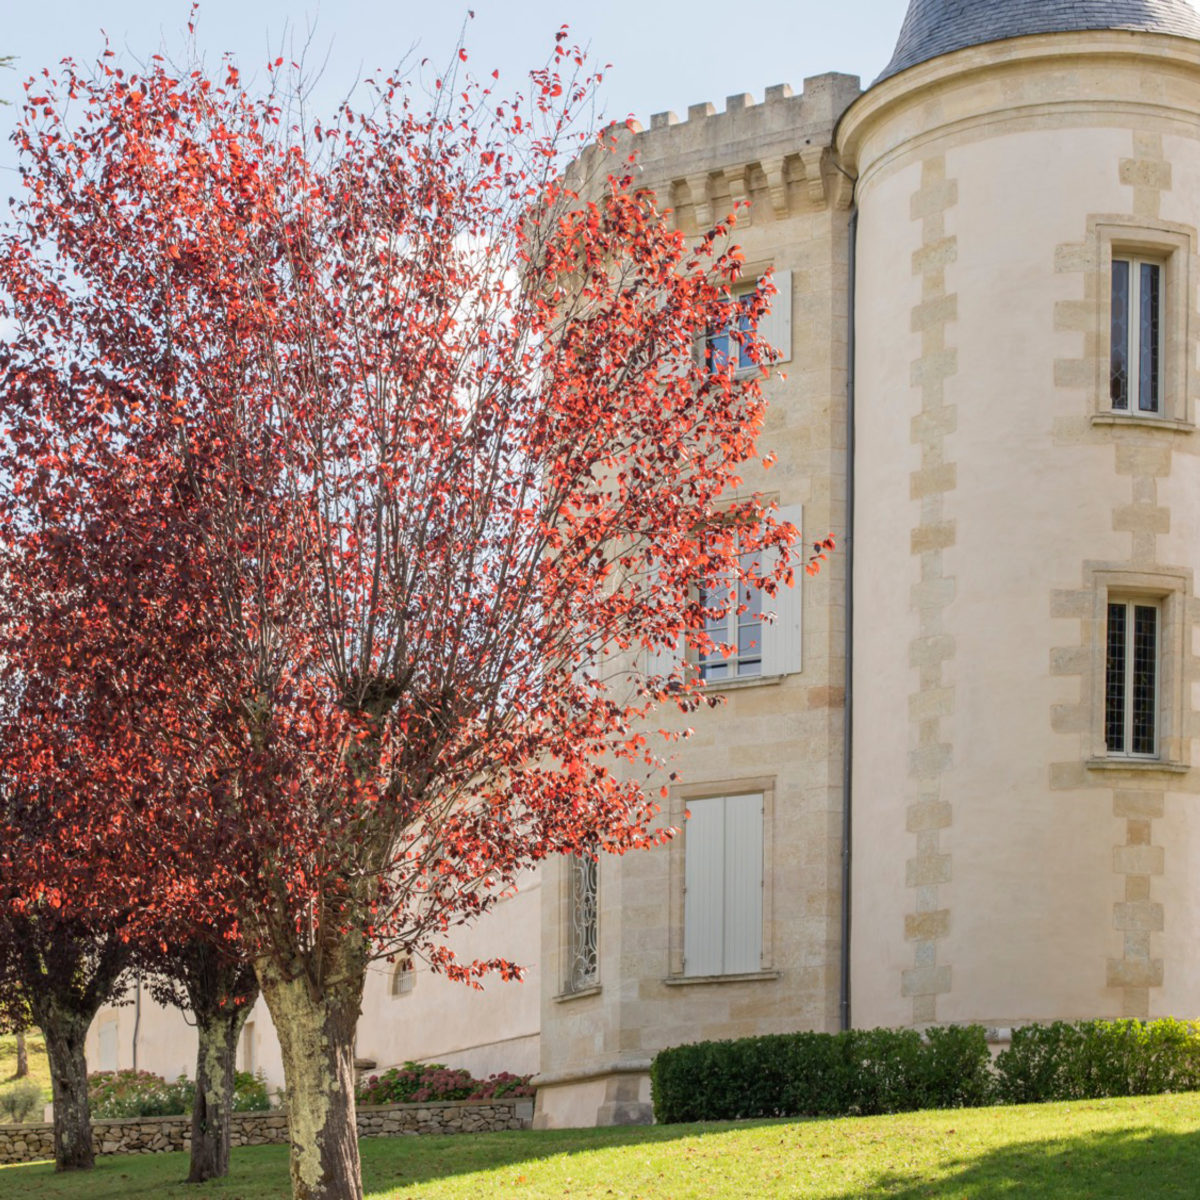 Article Sud-Ouest – Le Château Malromé veut séduire la clientèle girondine